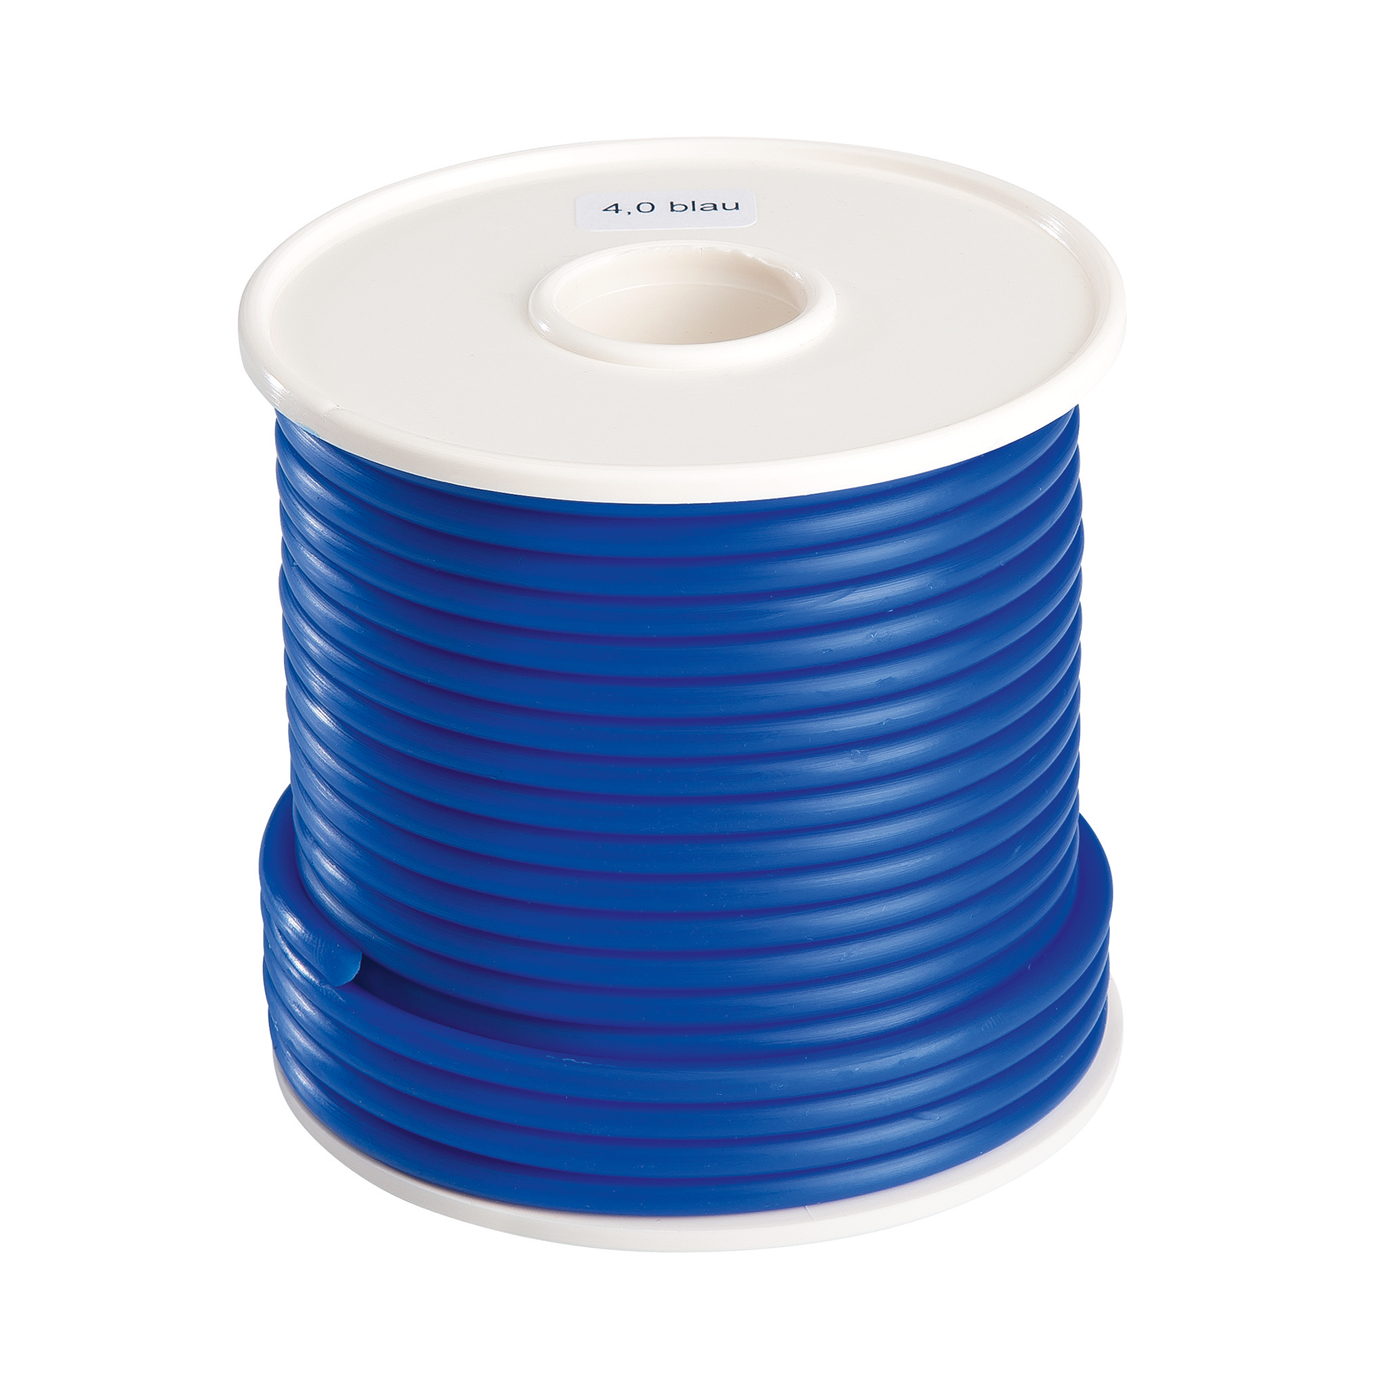 FINOHIT Wax Wire, ø 4.0 mm, Medium Hard, Blue - 250 g